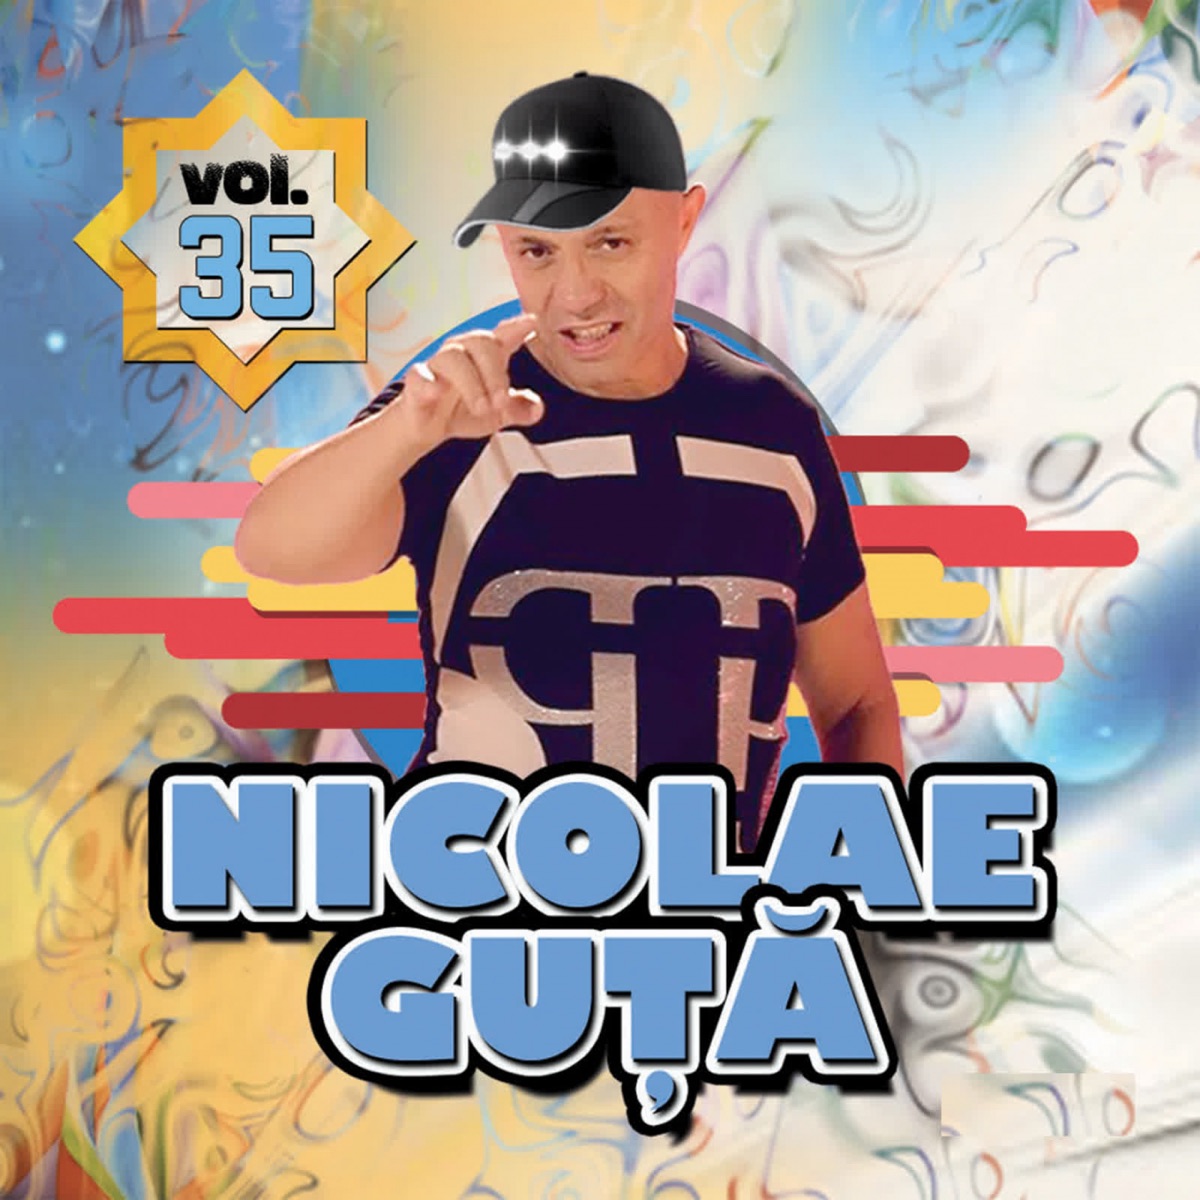 Nicolae Guta, Vol. 34 by Nicolae Guță on Apple Music